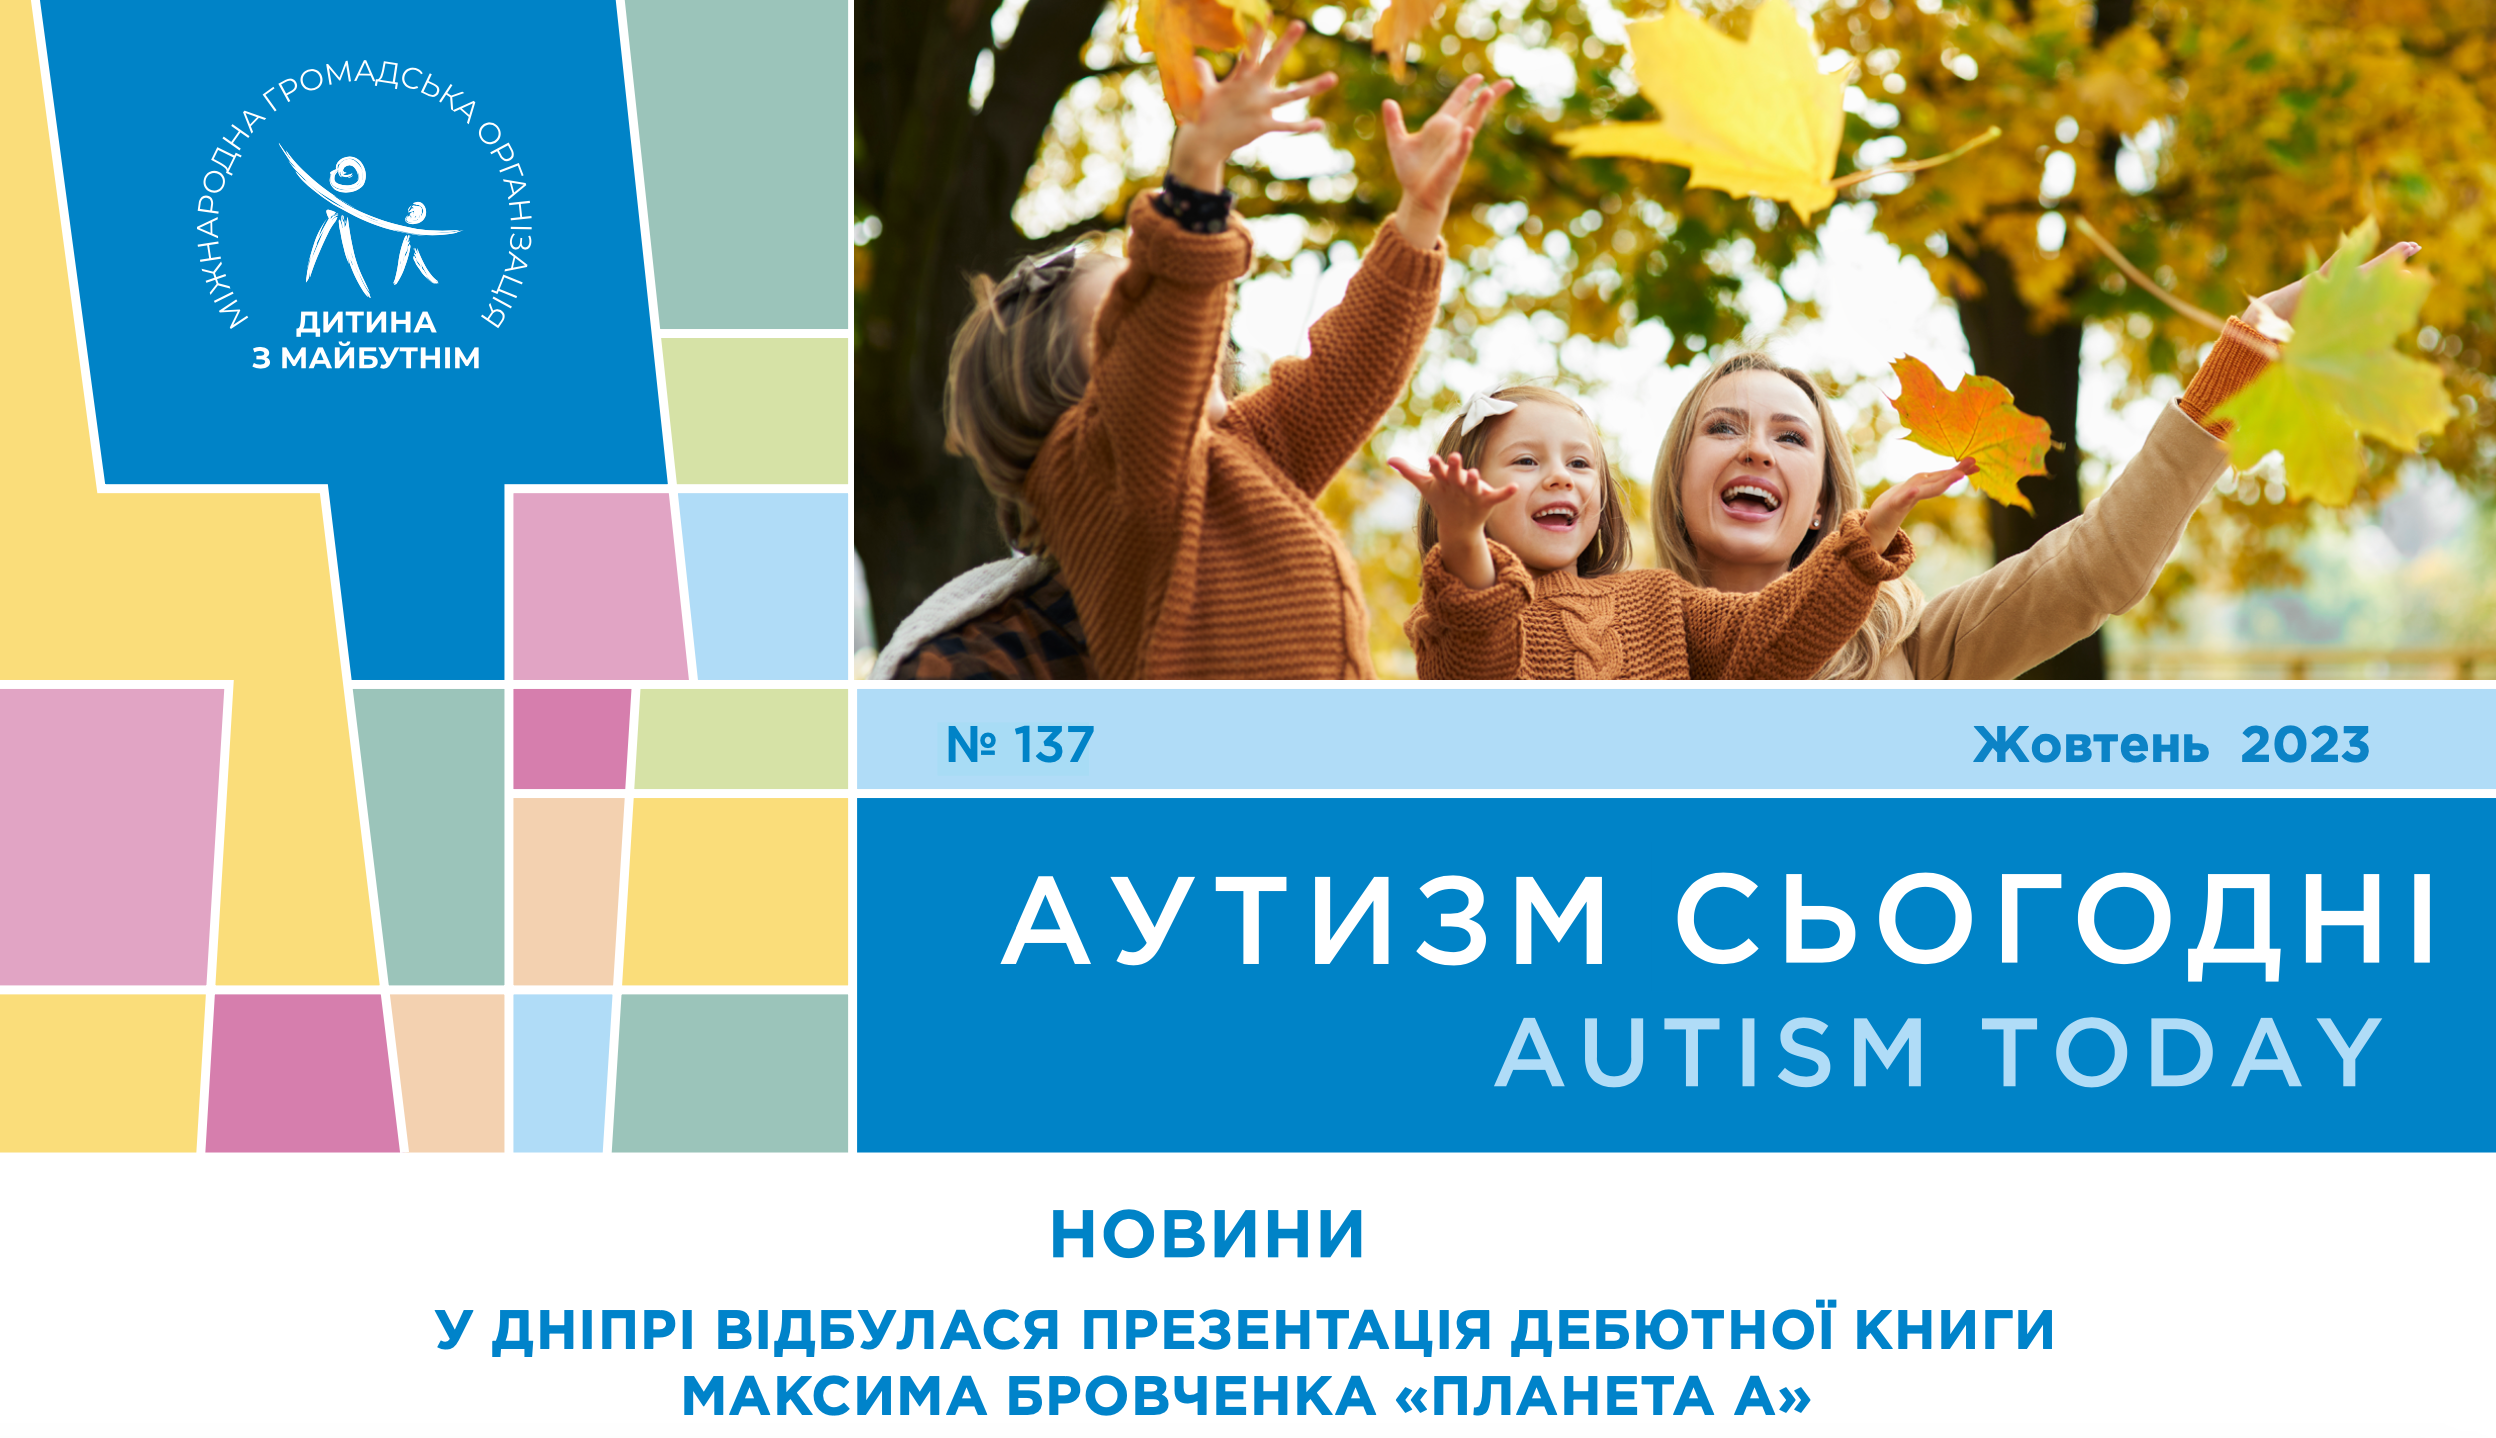 Презентация дебютной книги Максима Бровченко и интервью с семьей юного художника, данные, которые позволяют диагностировать аутизм раньше и многое другое — на страницах «Аутизм сегодня» за октябрь 2023 года